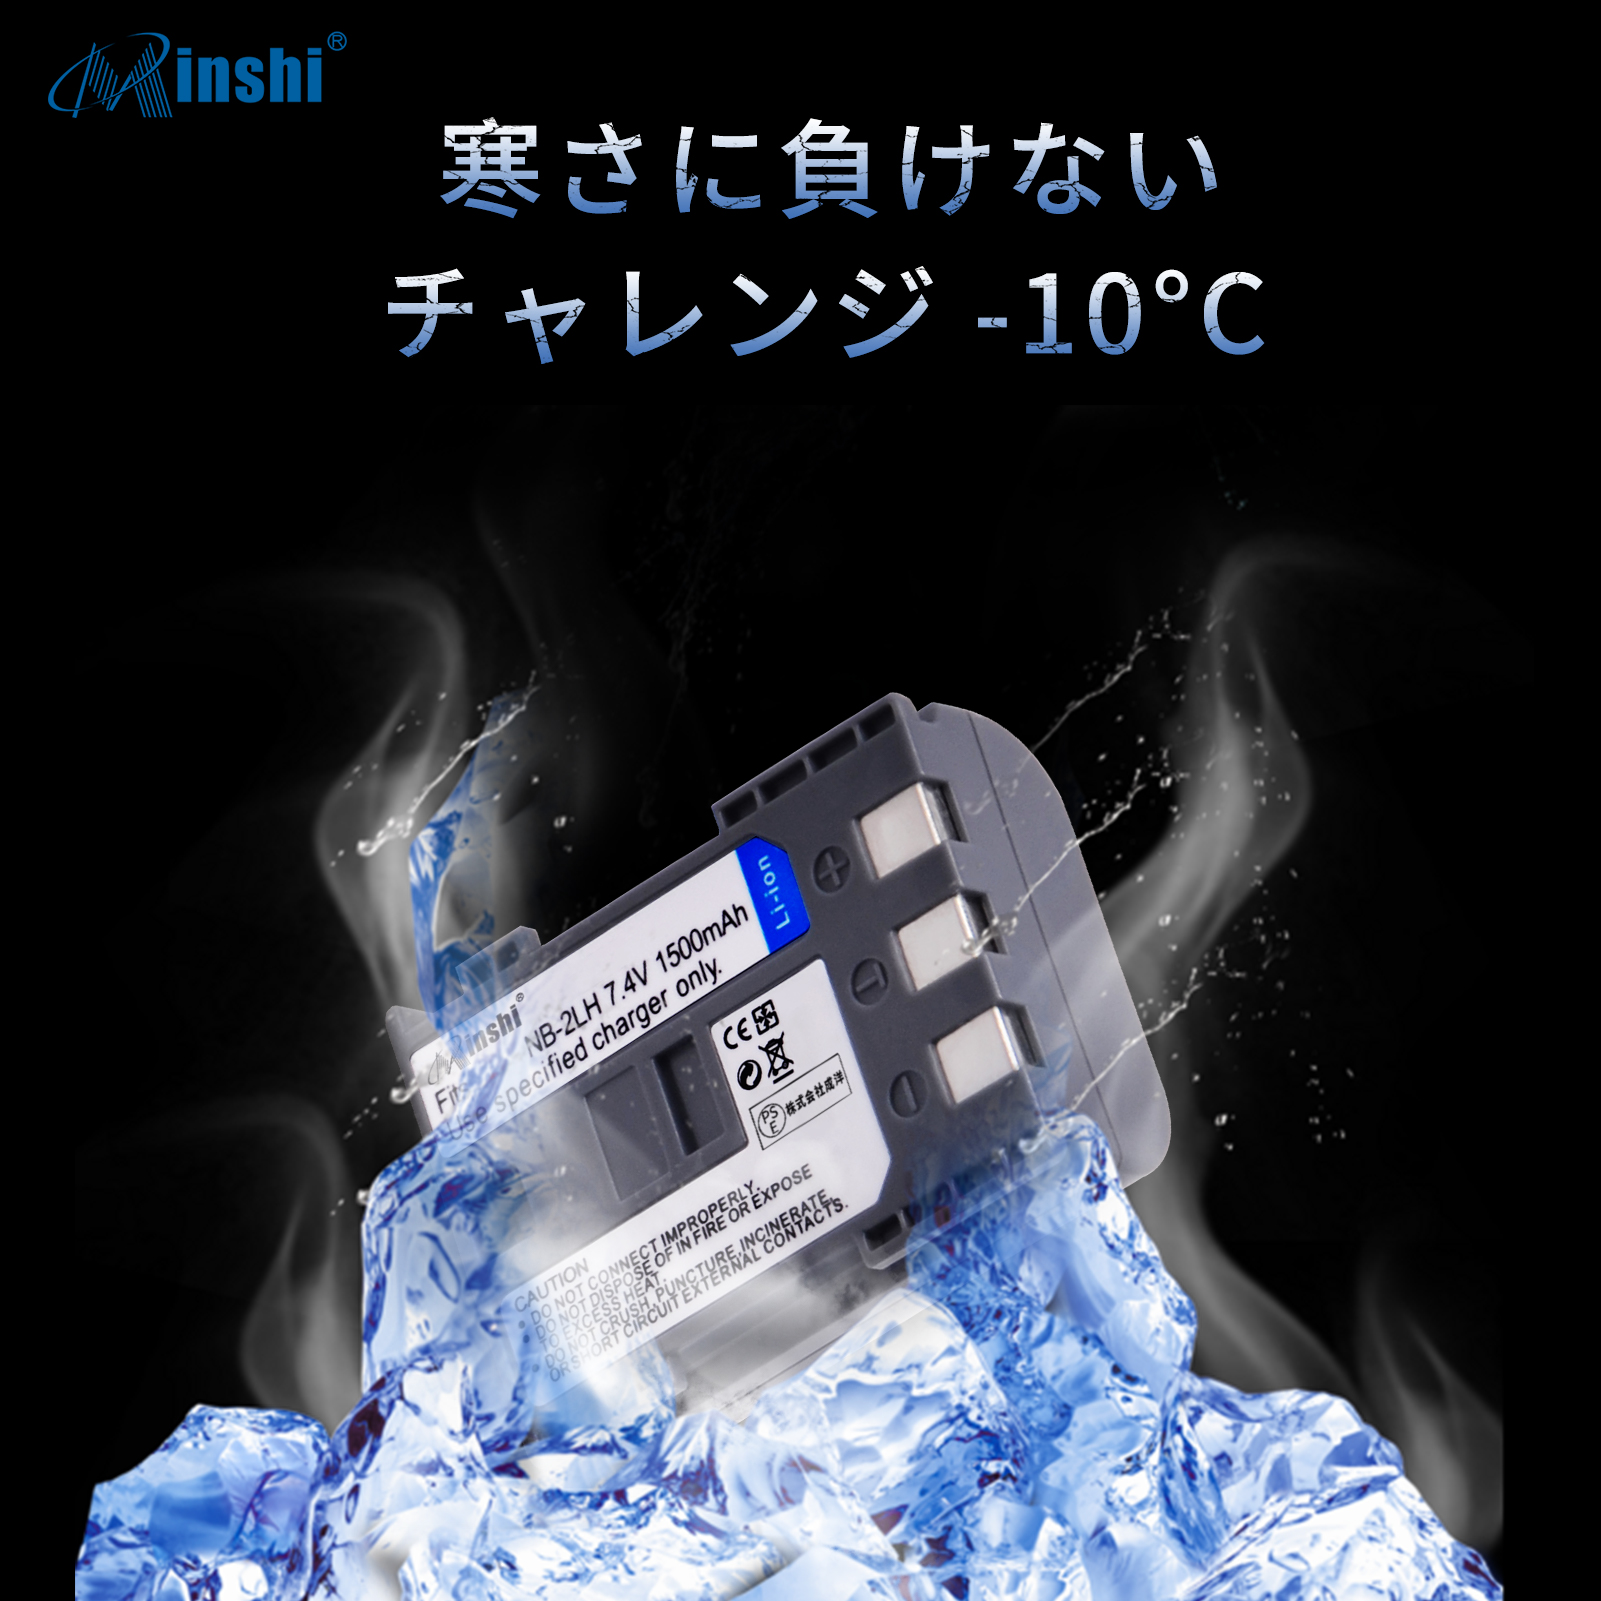 セール激安商品 【4個セット&2個充電器】 minshi CANON EOS Kiss Digital HF-R11 対応 NB-2L互換バッテリー 1500mAh 高品質交換バッテリー